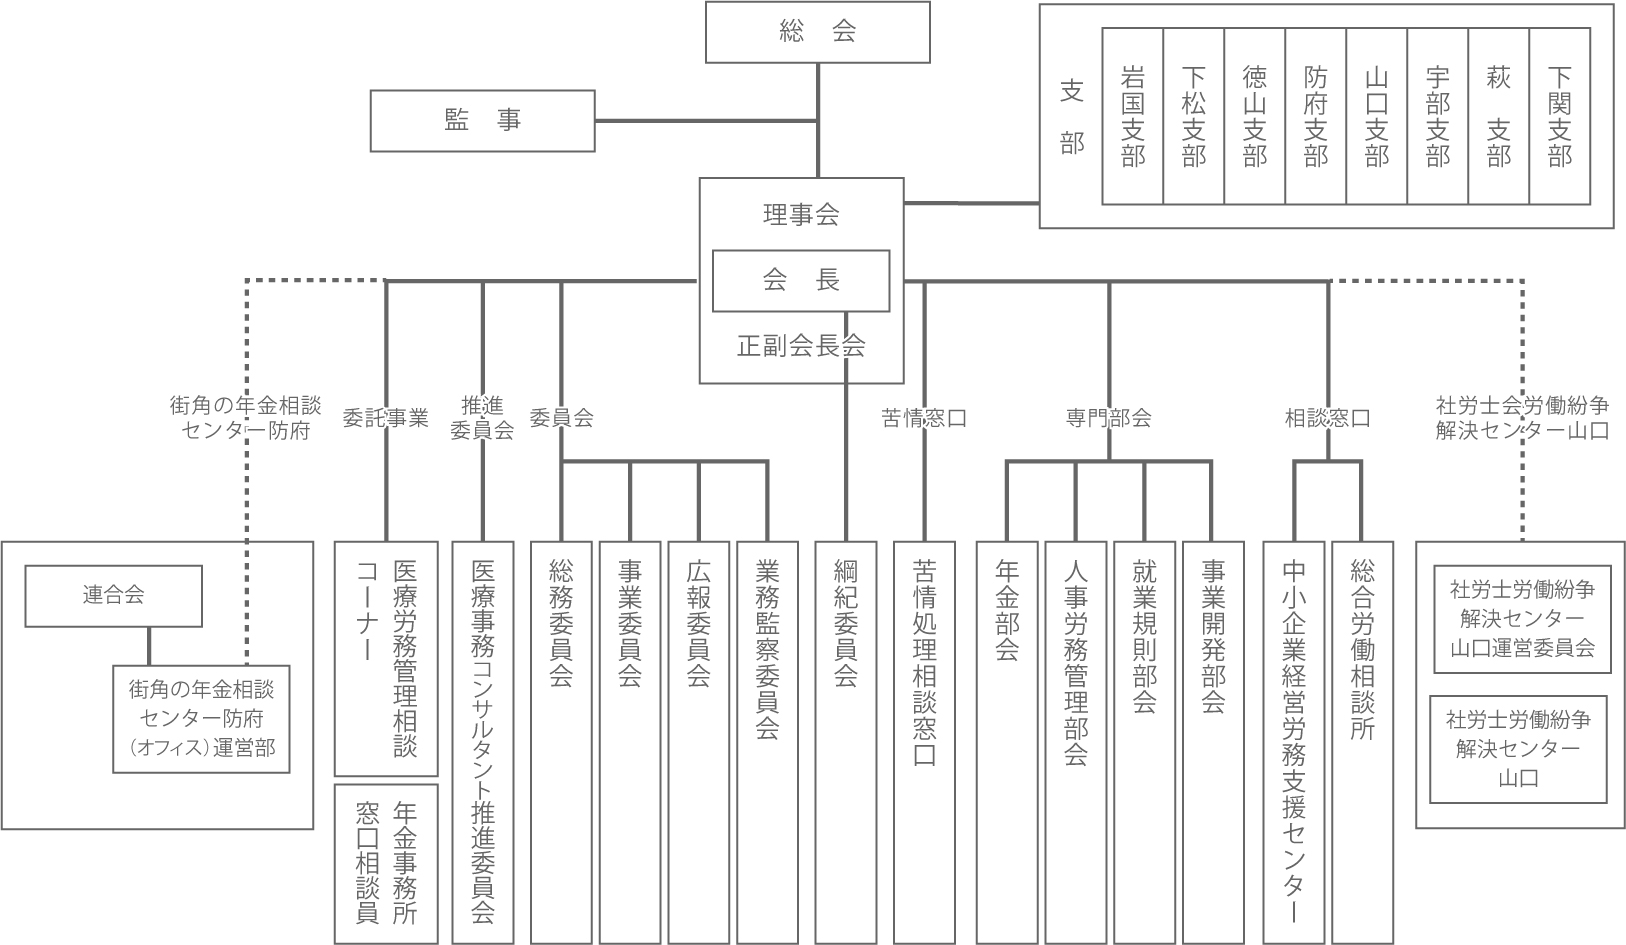 山口県社会保険労務士会の組織図